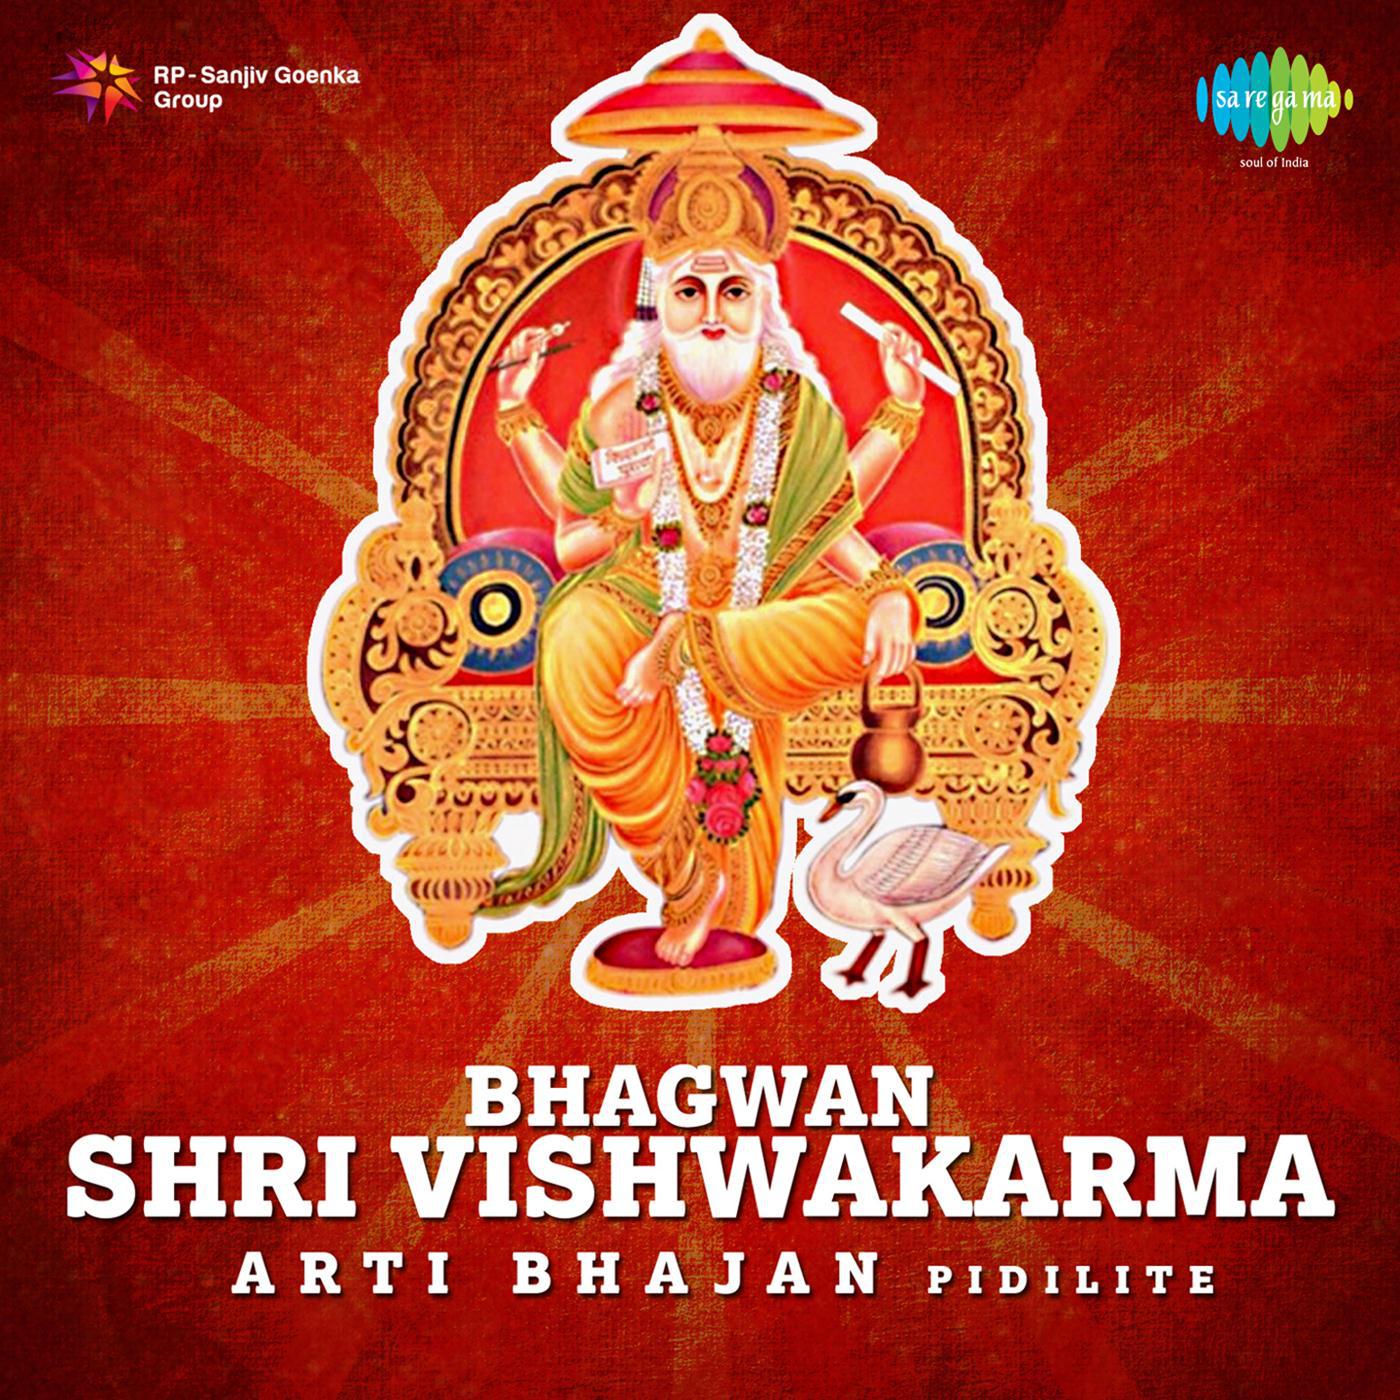 Bhagwan Shri Vishwakarma Arti Bhajan Pidilite